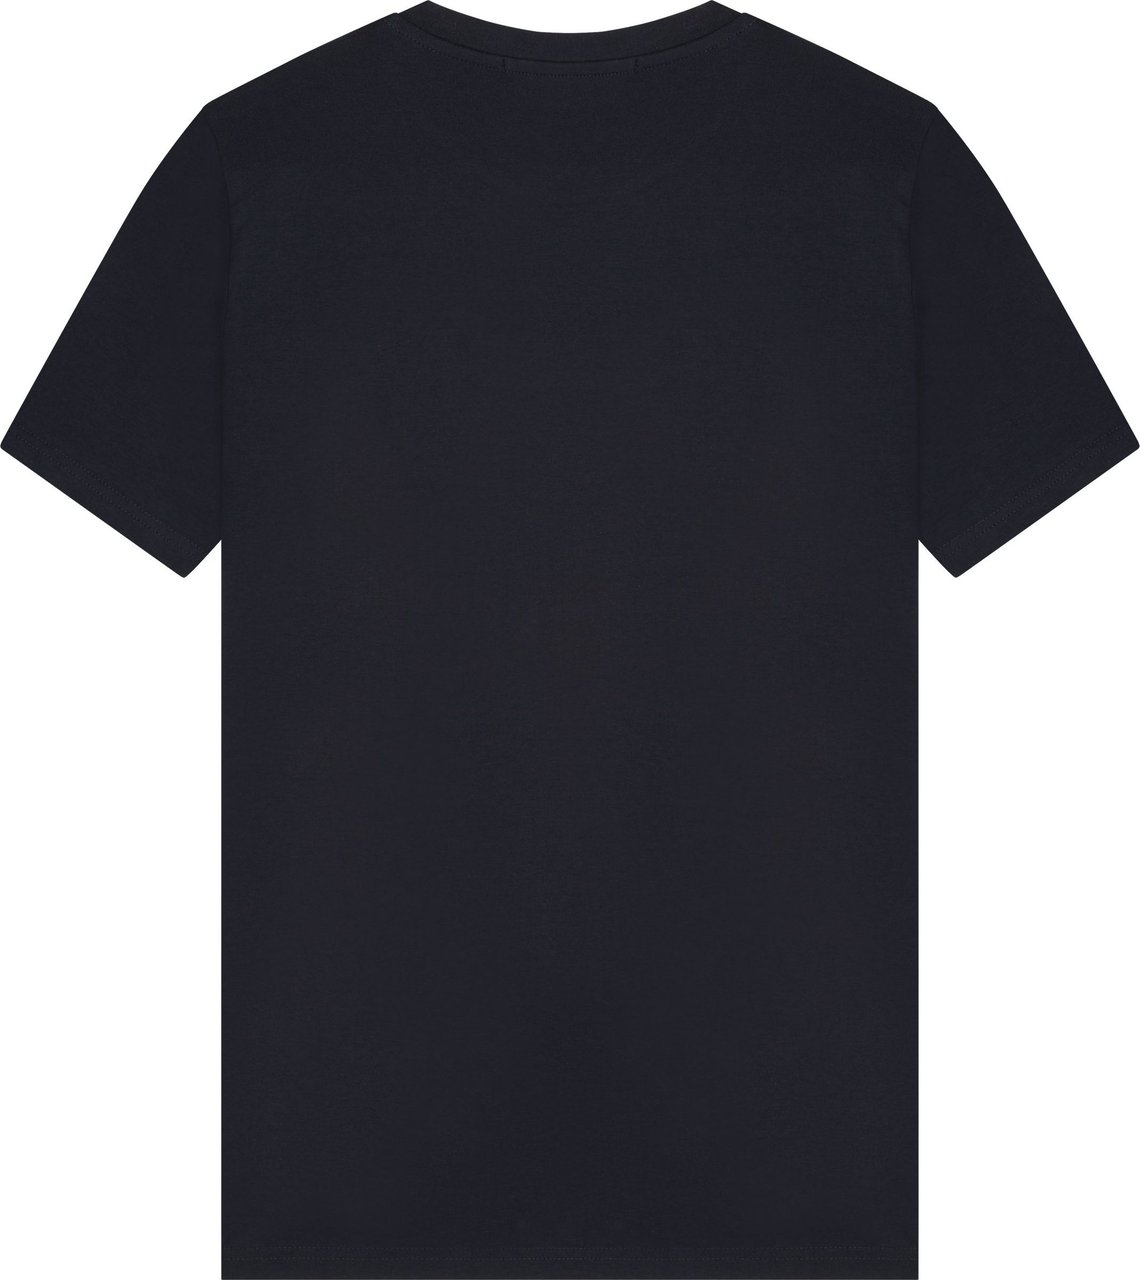 Malelions Sew T-Shirt - Dark Navy Blauw